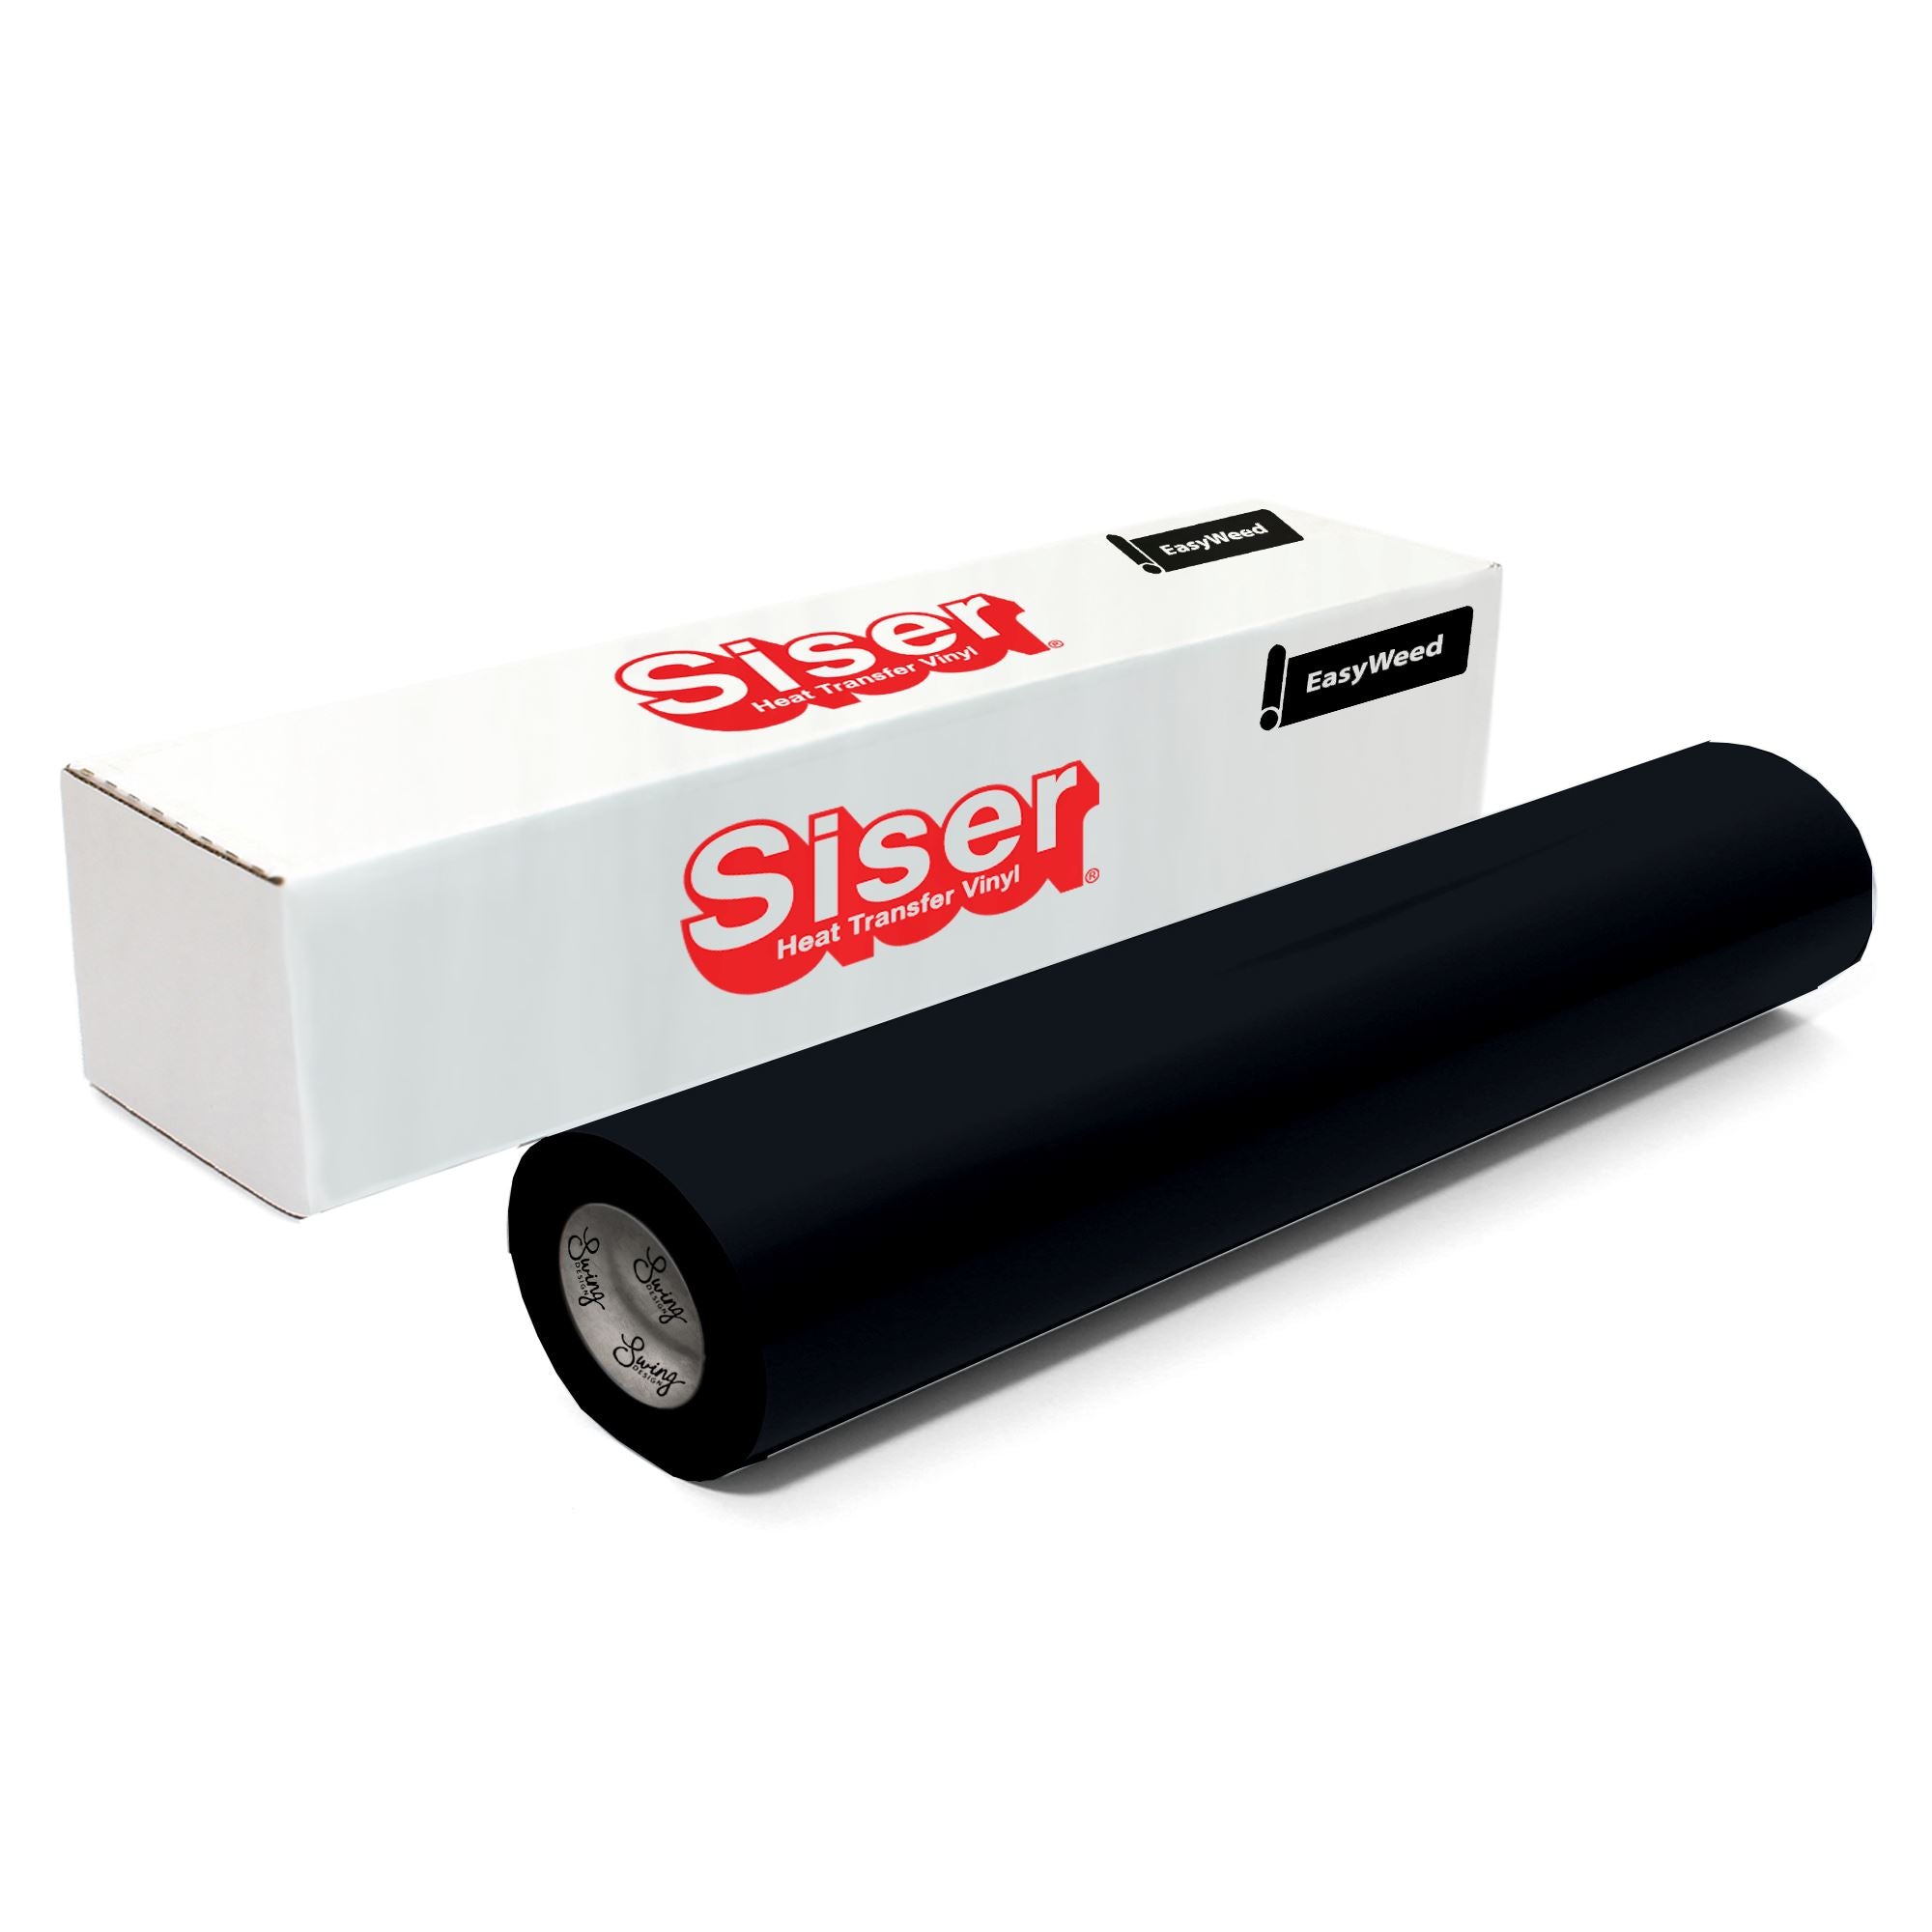 Siser EasyWeed HTV 12x5ft Roll - Iron on Heat Transfer Vinyl (Black)